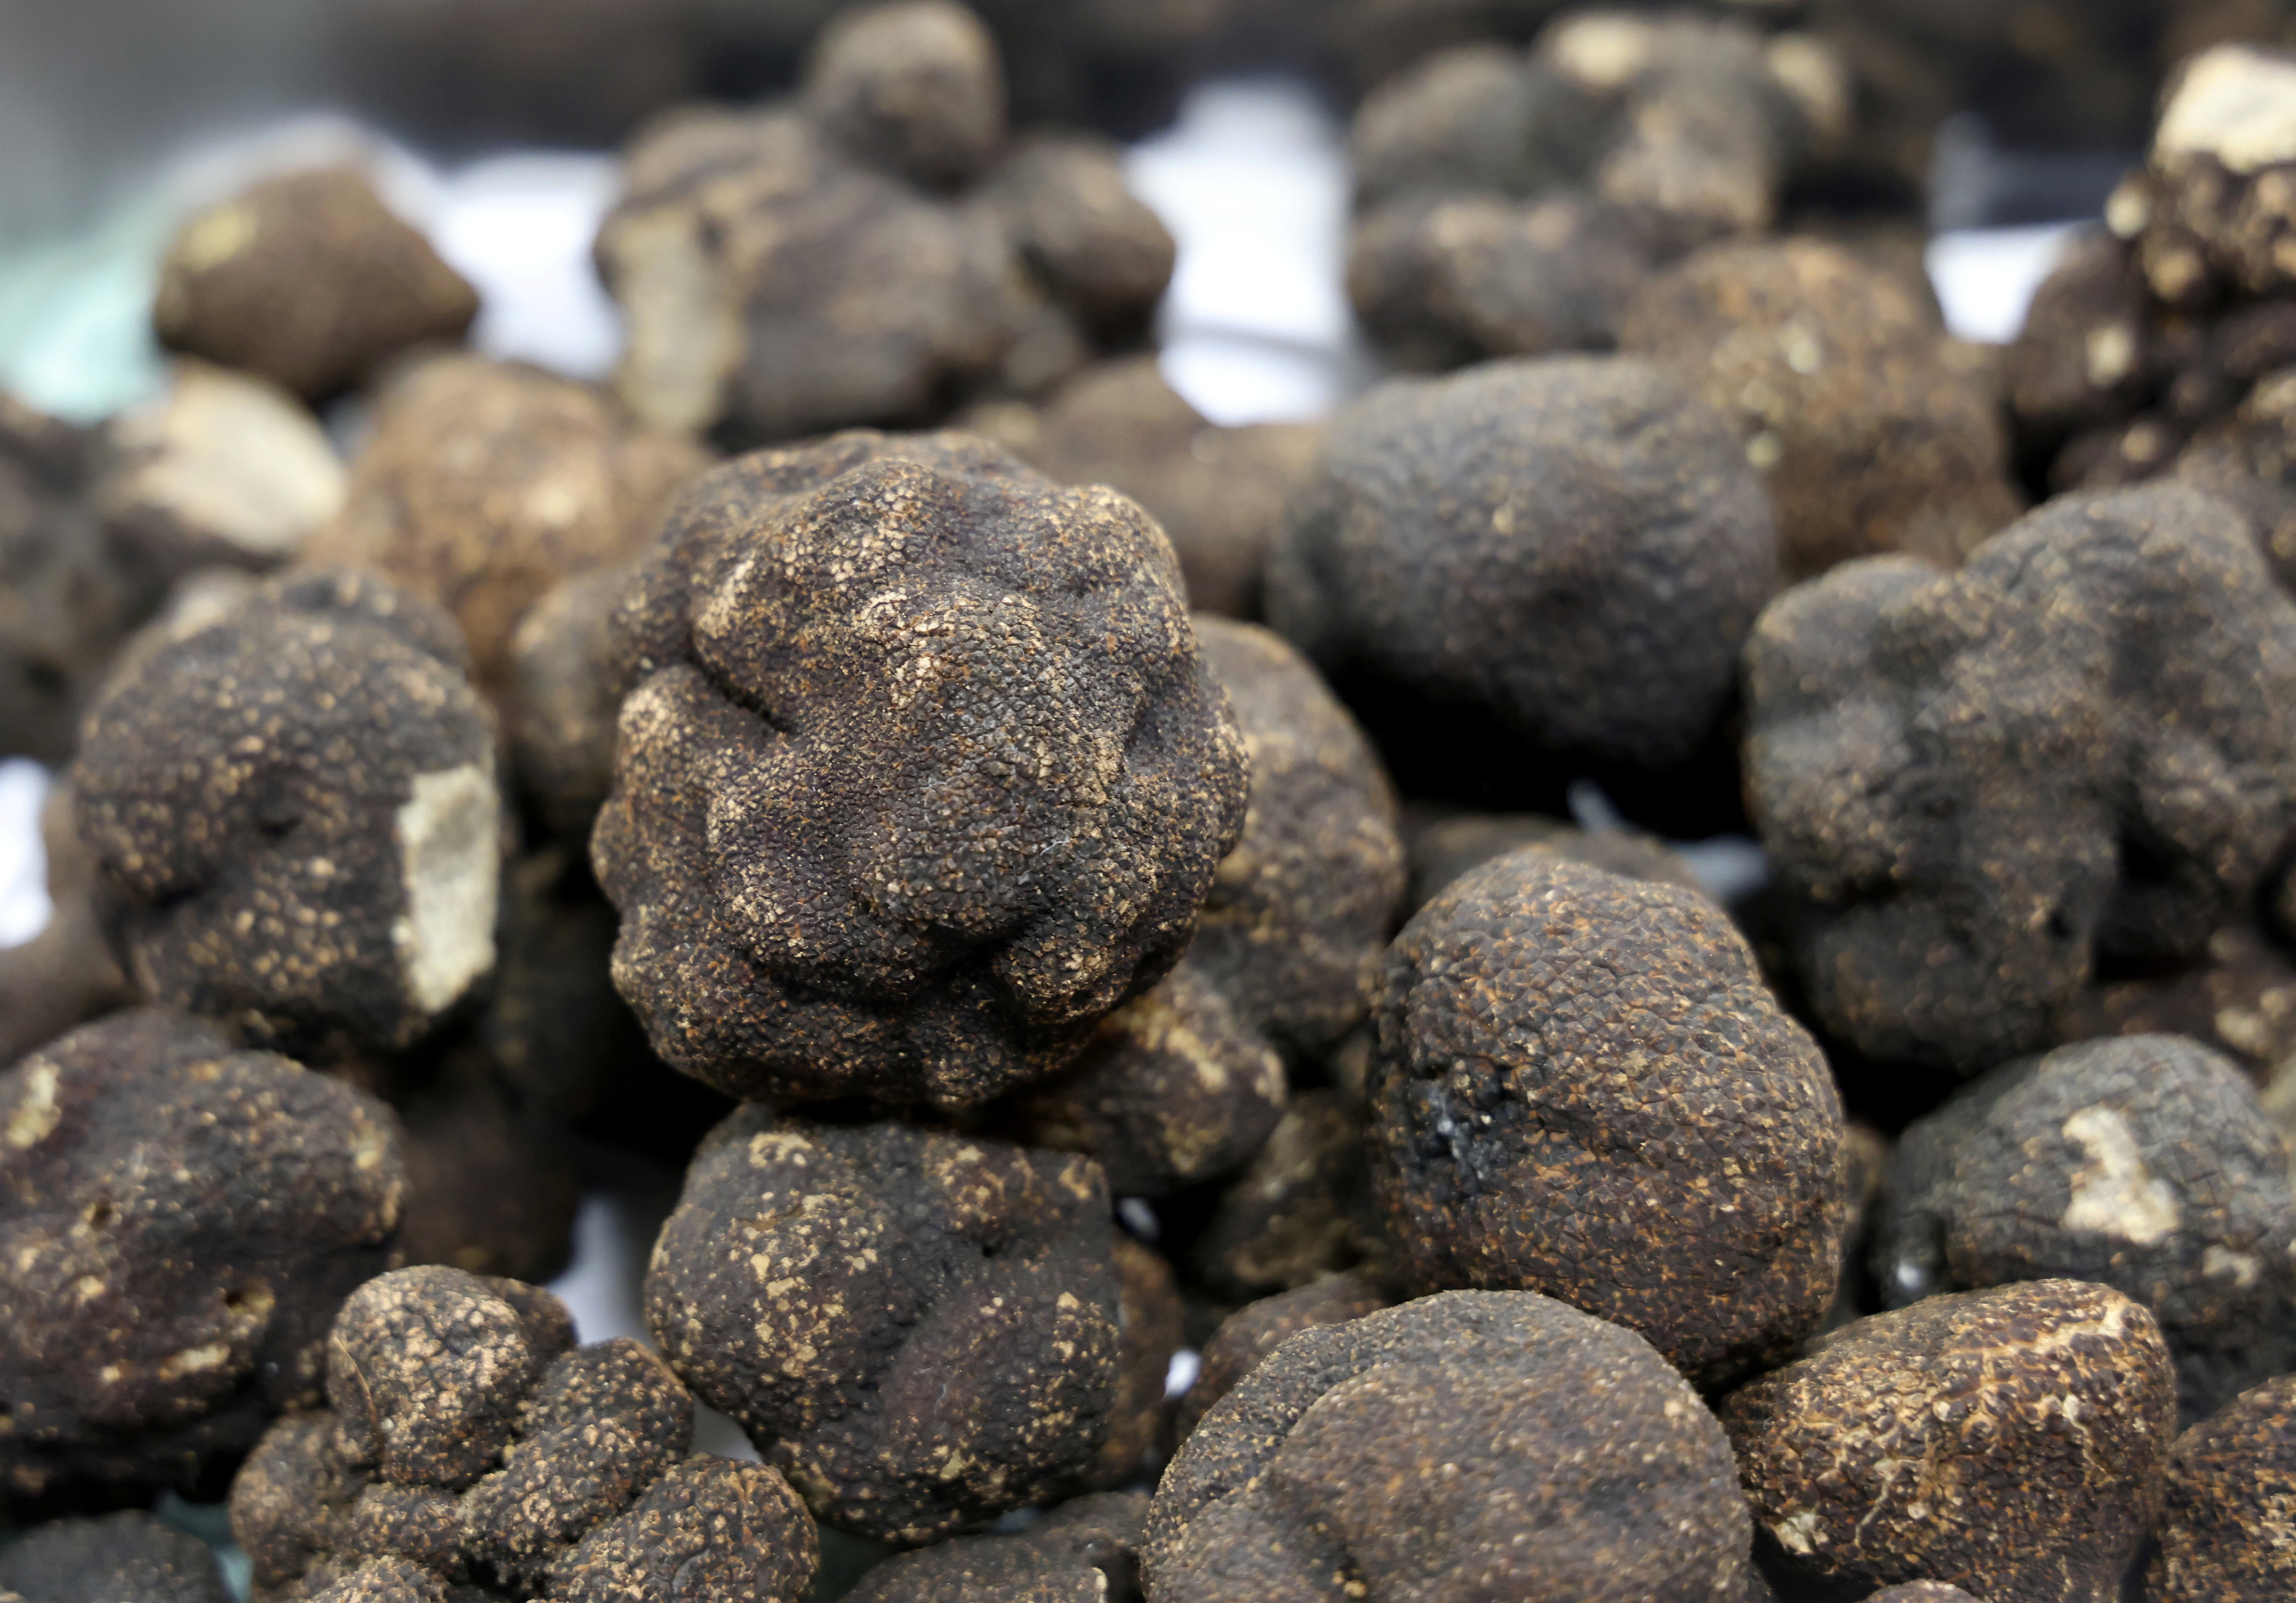 Brisures de truffes noires - 105g